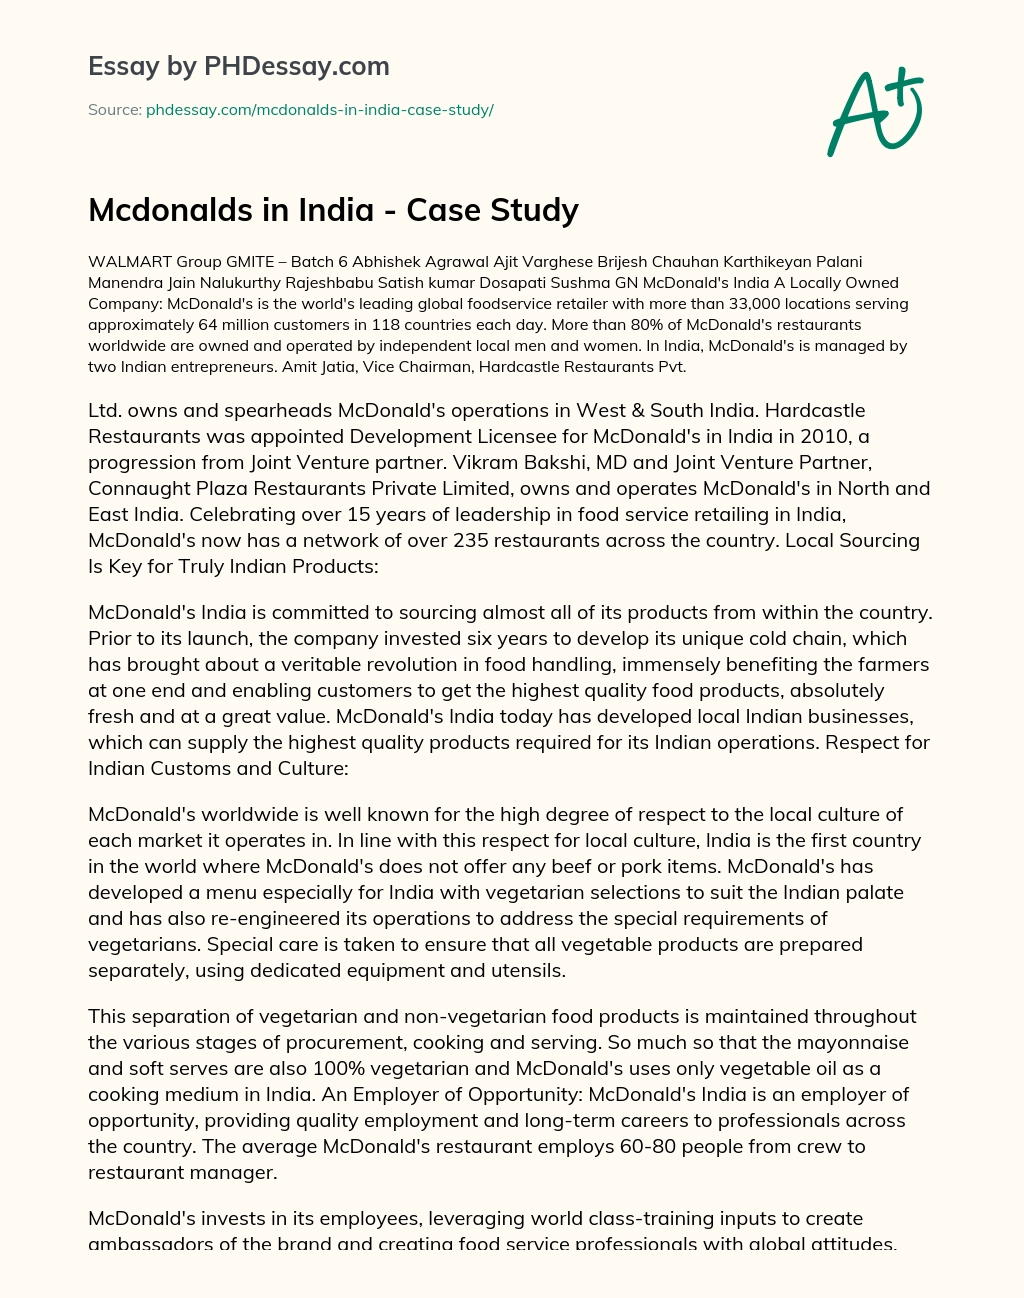 mcdonalds failure in india case study